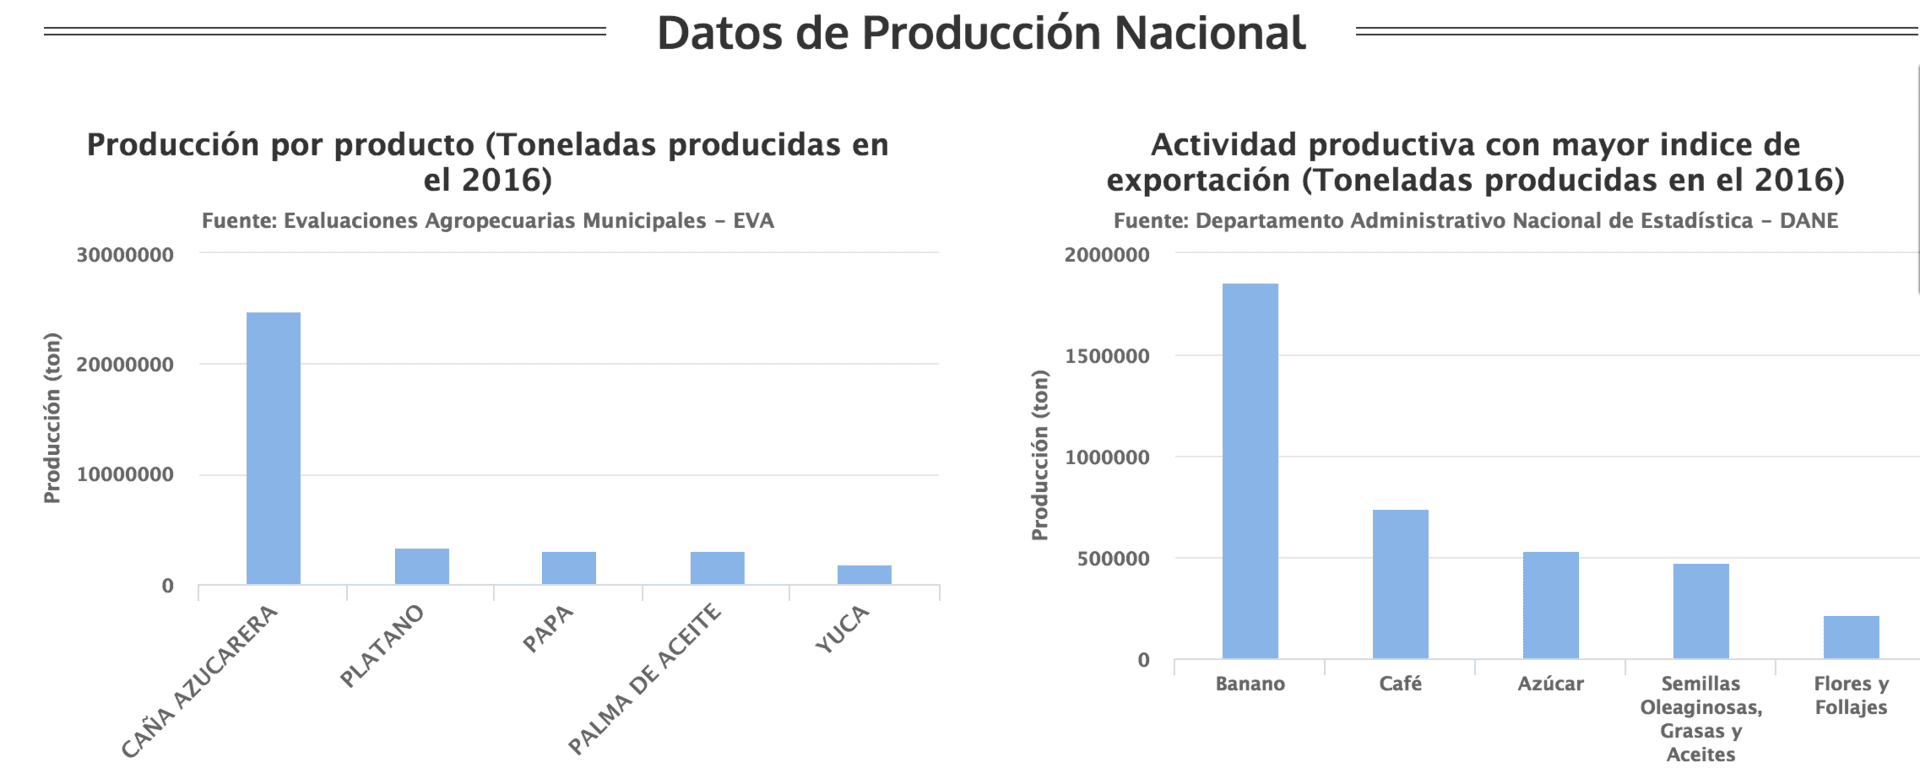 Gráfica de producción de productos agrícolas de Colombia en 2016 según Agronet